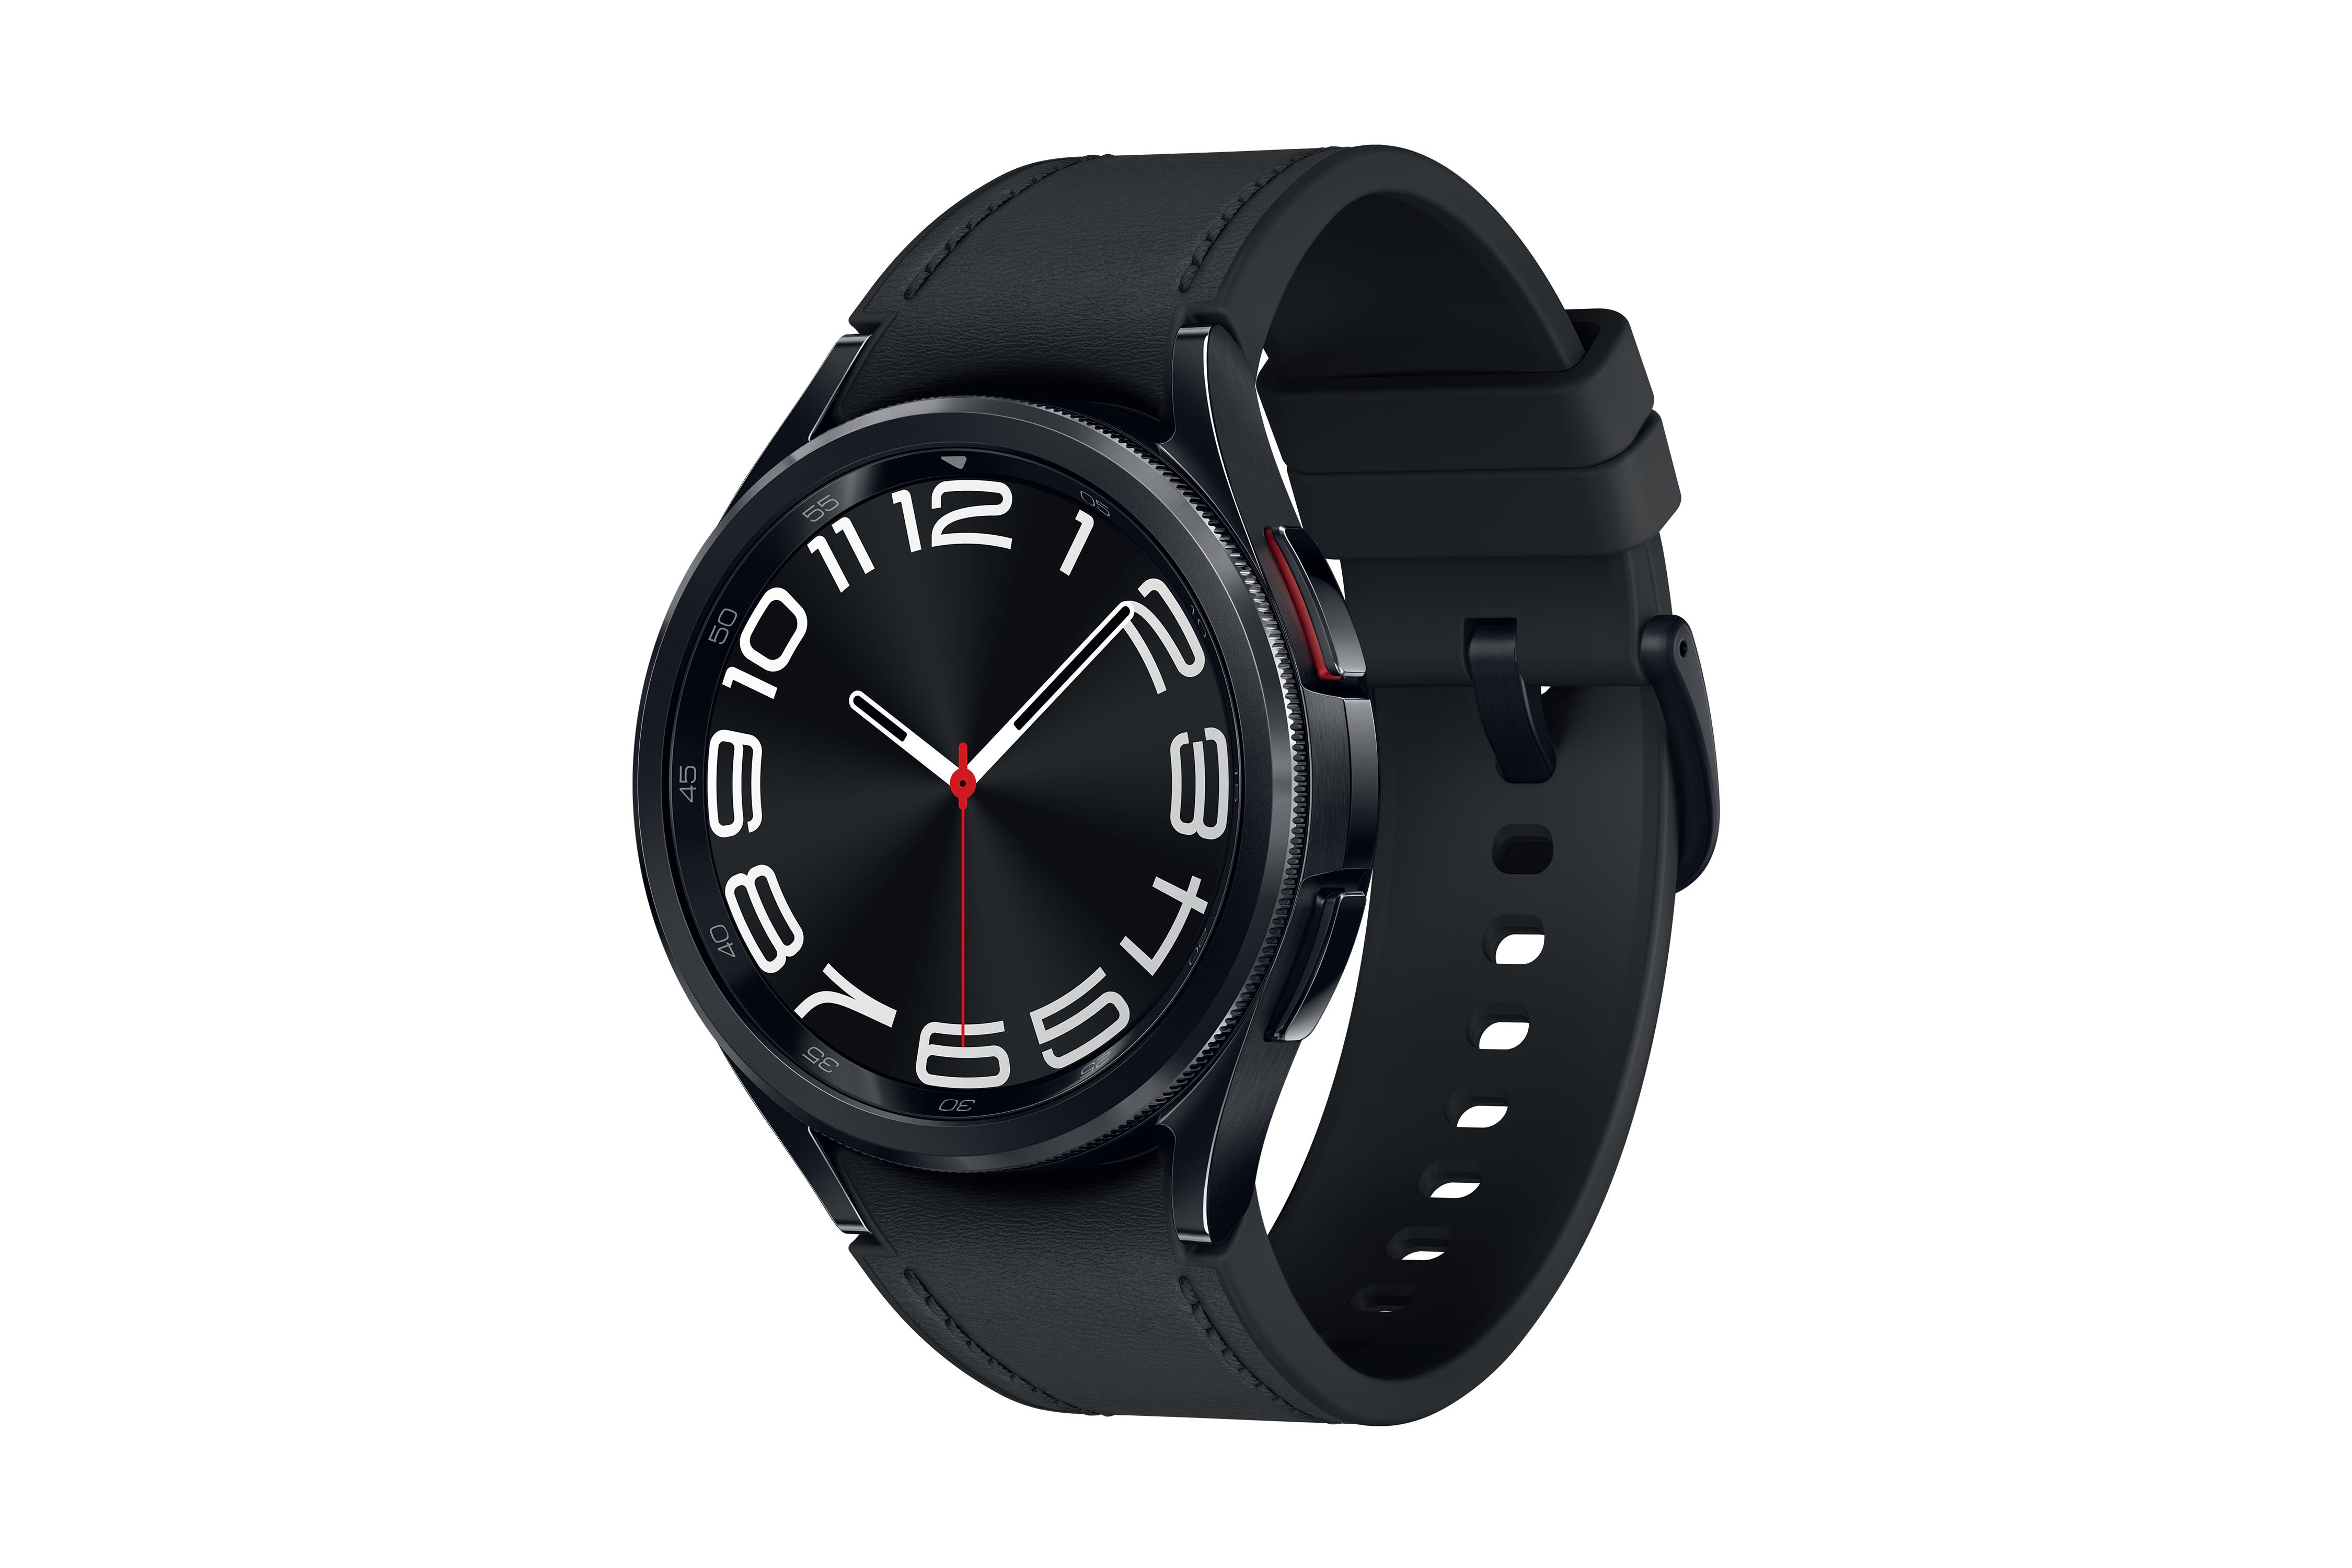 Galaxy Kunstleder, S/M, Black SAMSUNG 43 LTE mm Watch6 Smartwatch Classic